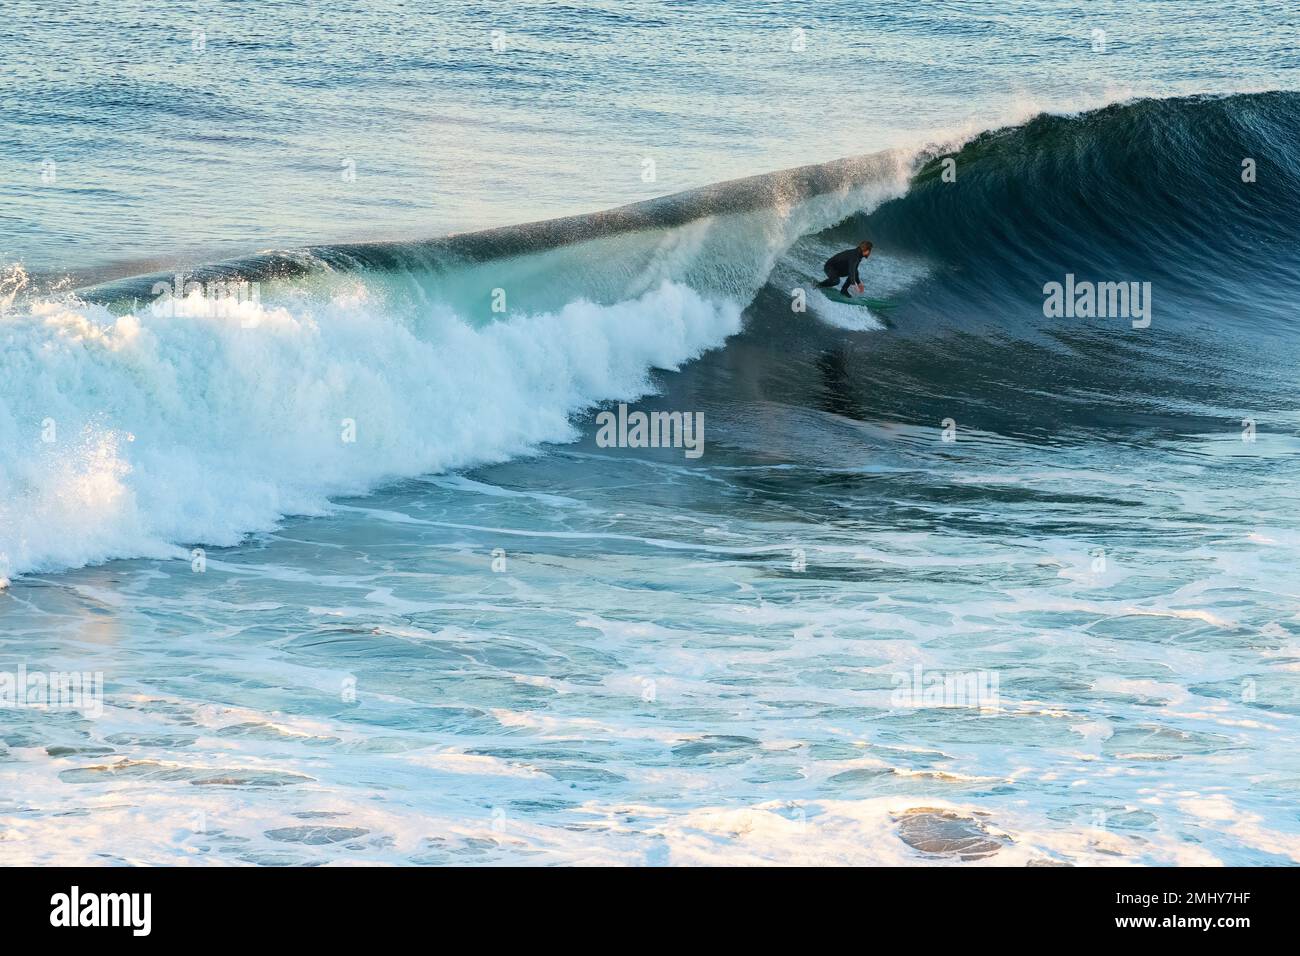 Pichilemu, région d'O'Higgins, Chili - Surfer à Punta de Lobos une plage de surf au sud de Pichilemu. Banque D'Images